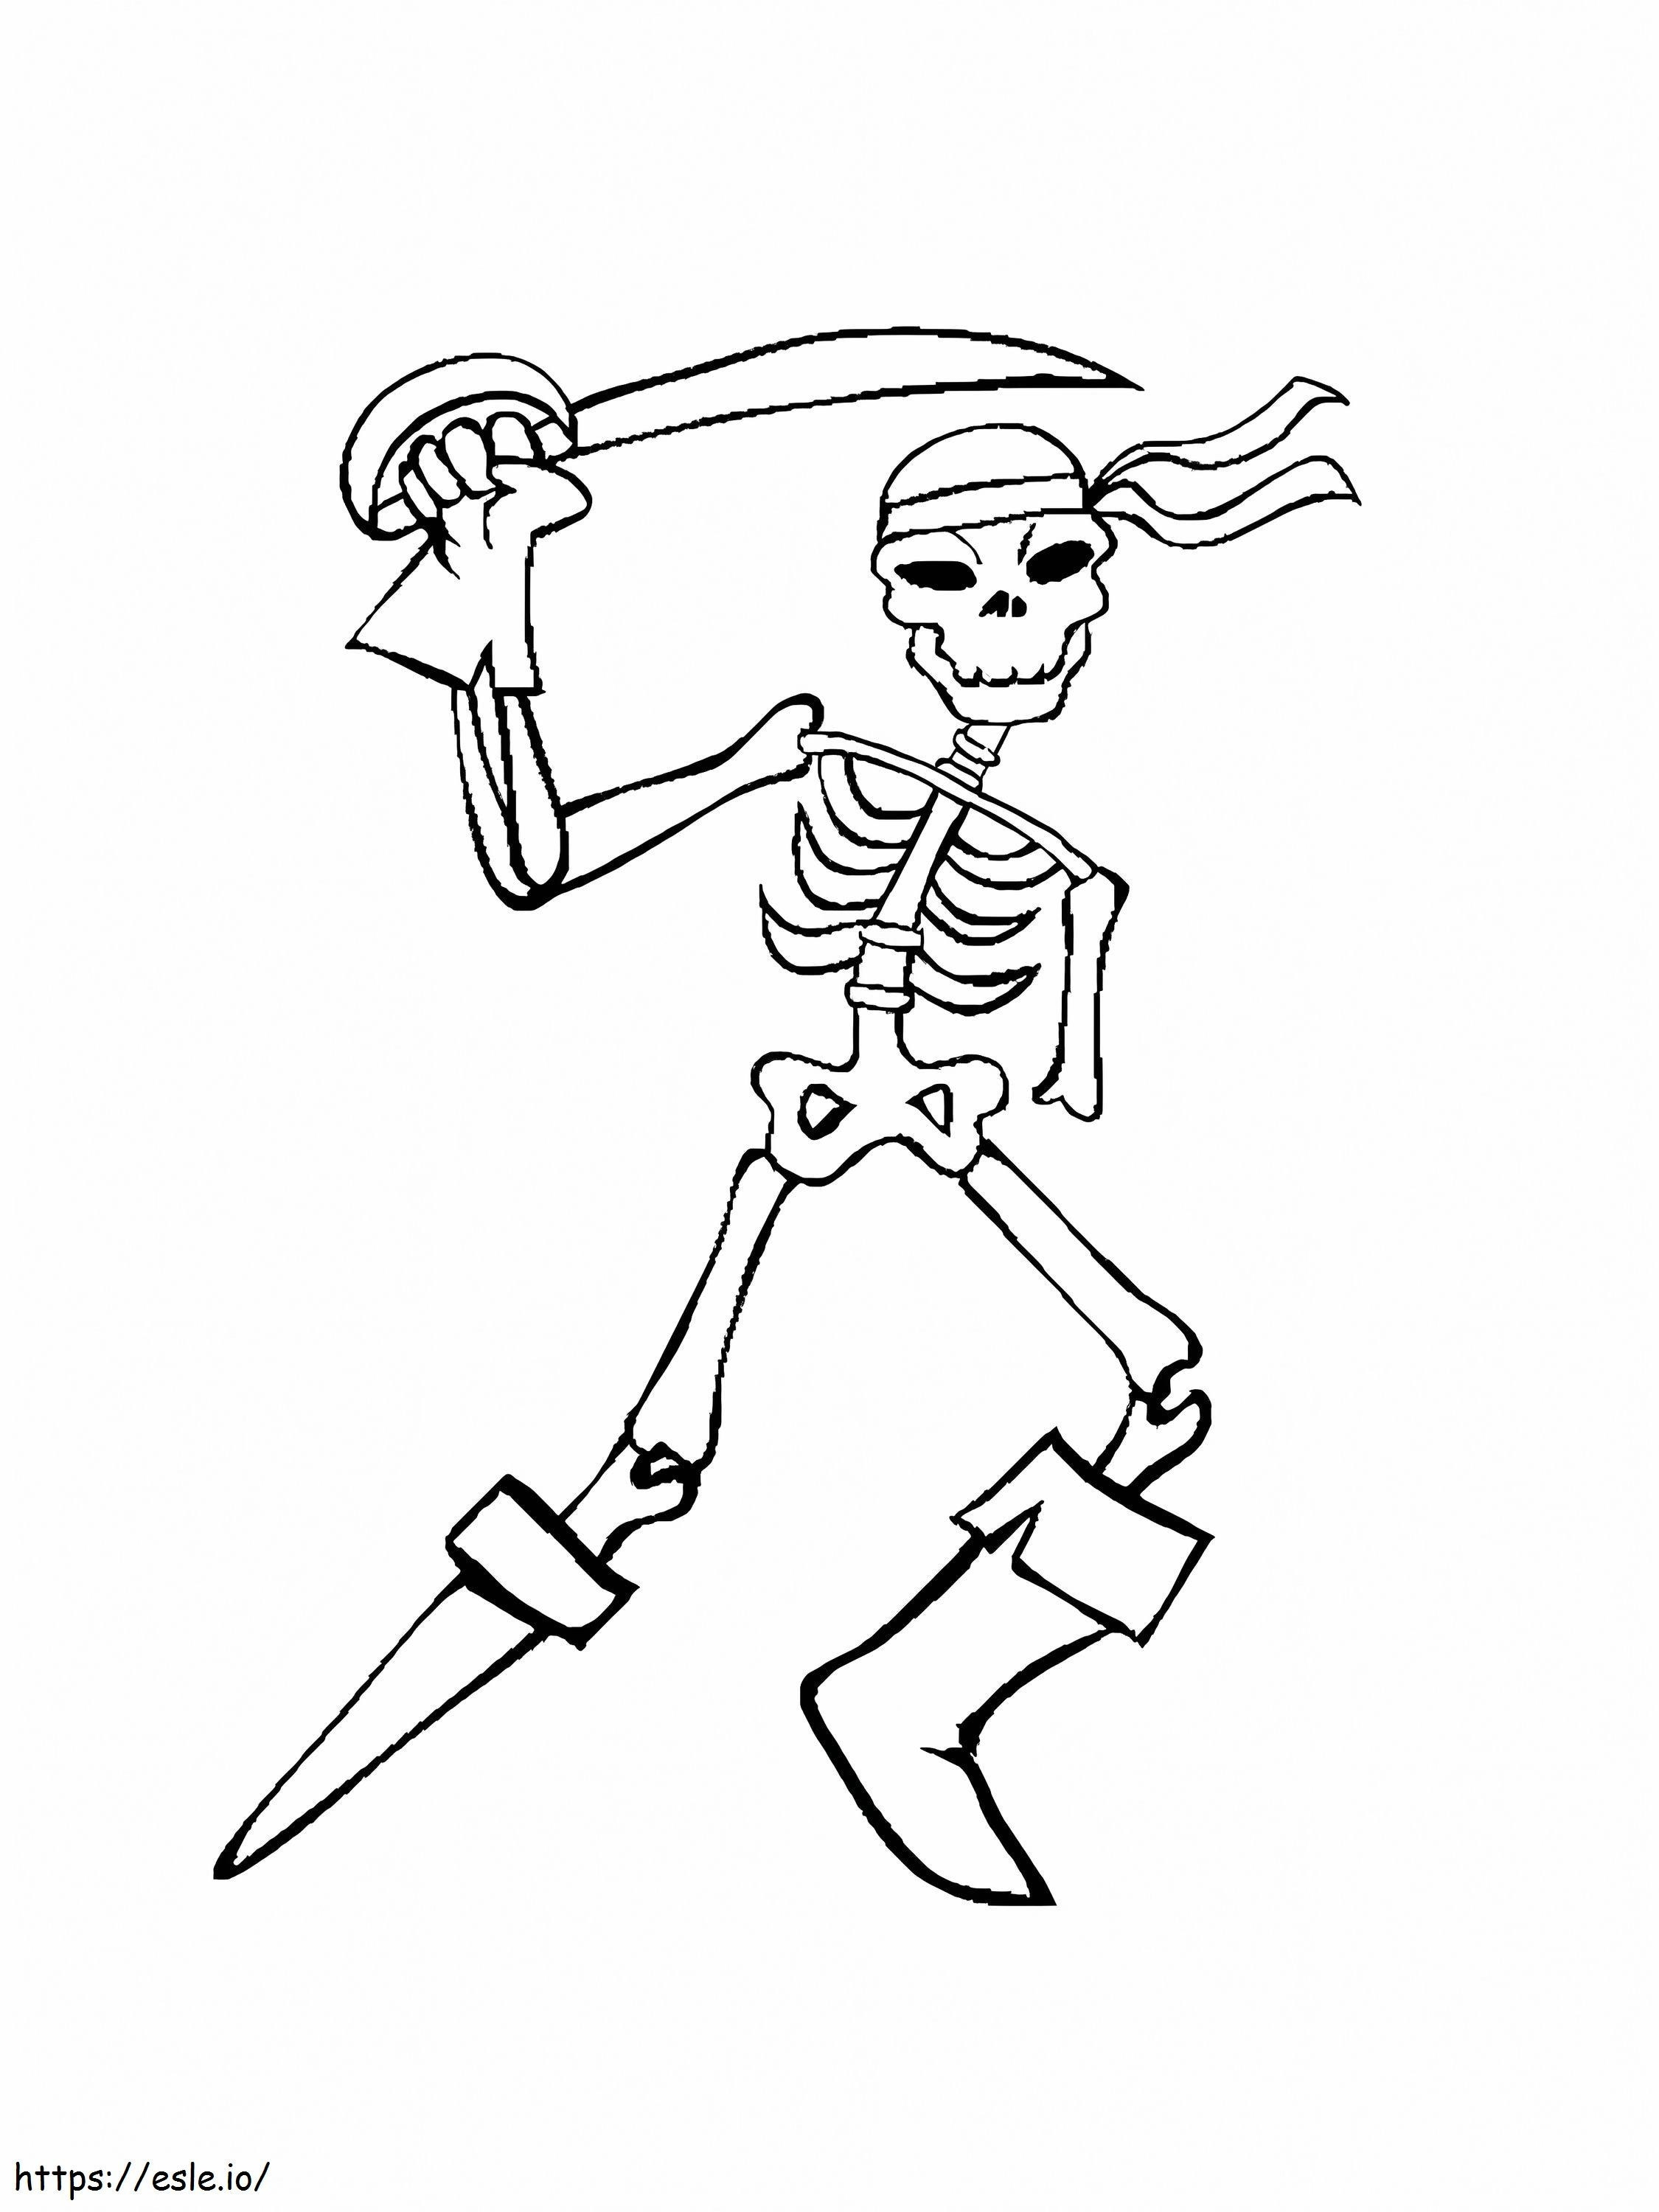 Piratenskelett mit Schwert ausmalbilder